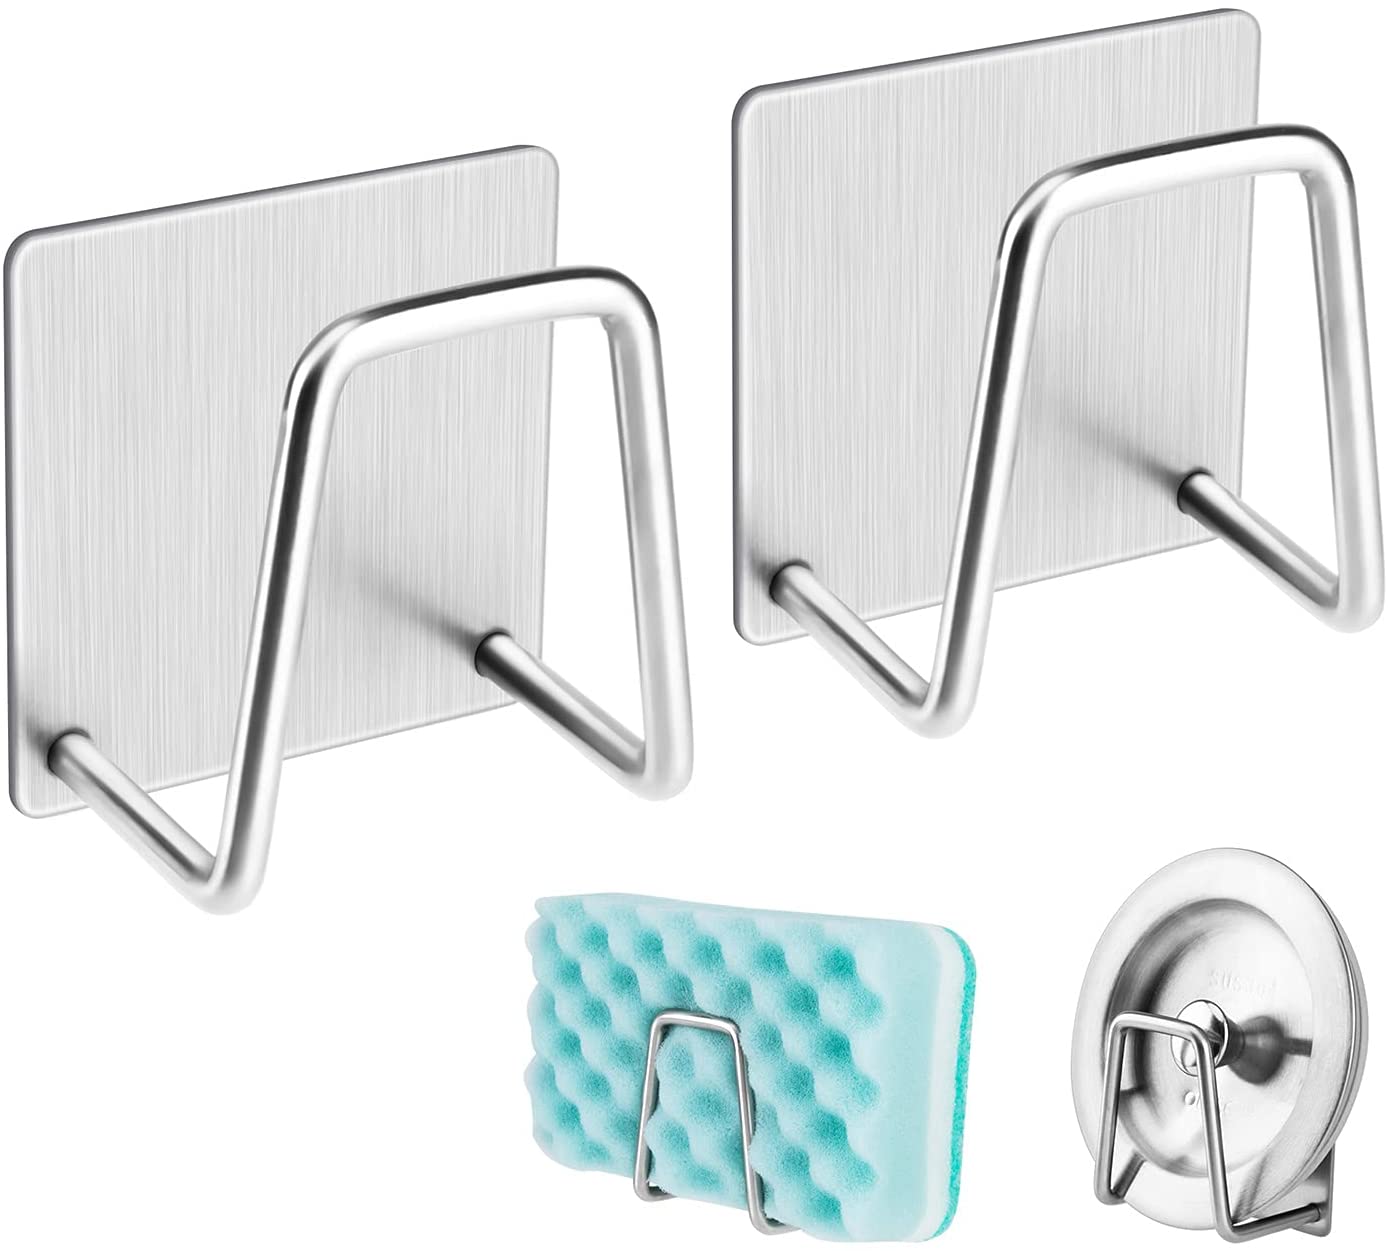 Sponge Holder Sink Caddy for Kitchen Accessories(2 Pcs) - 🔥BUY 3 SETS GET 2 SETS FREE🔥